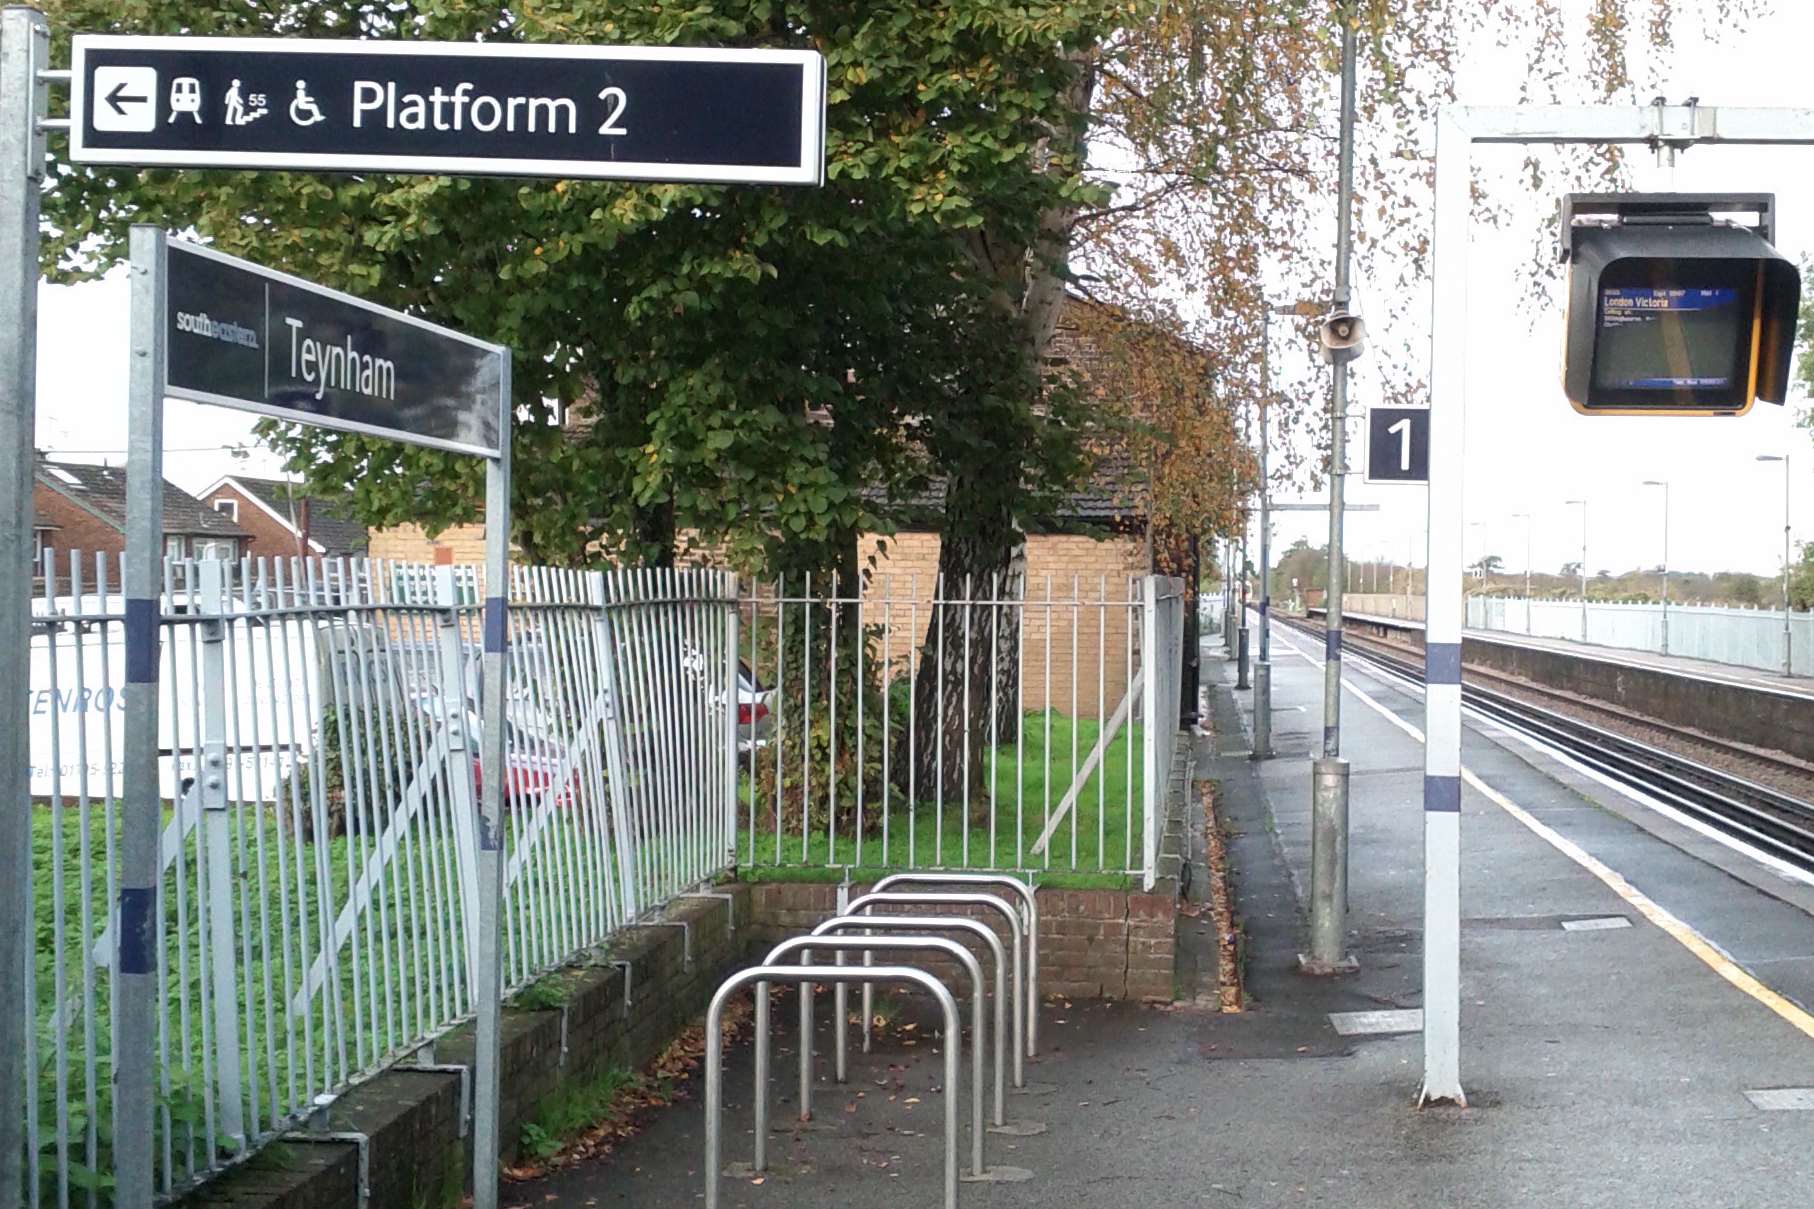 The platform at Teynham station